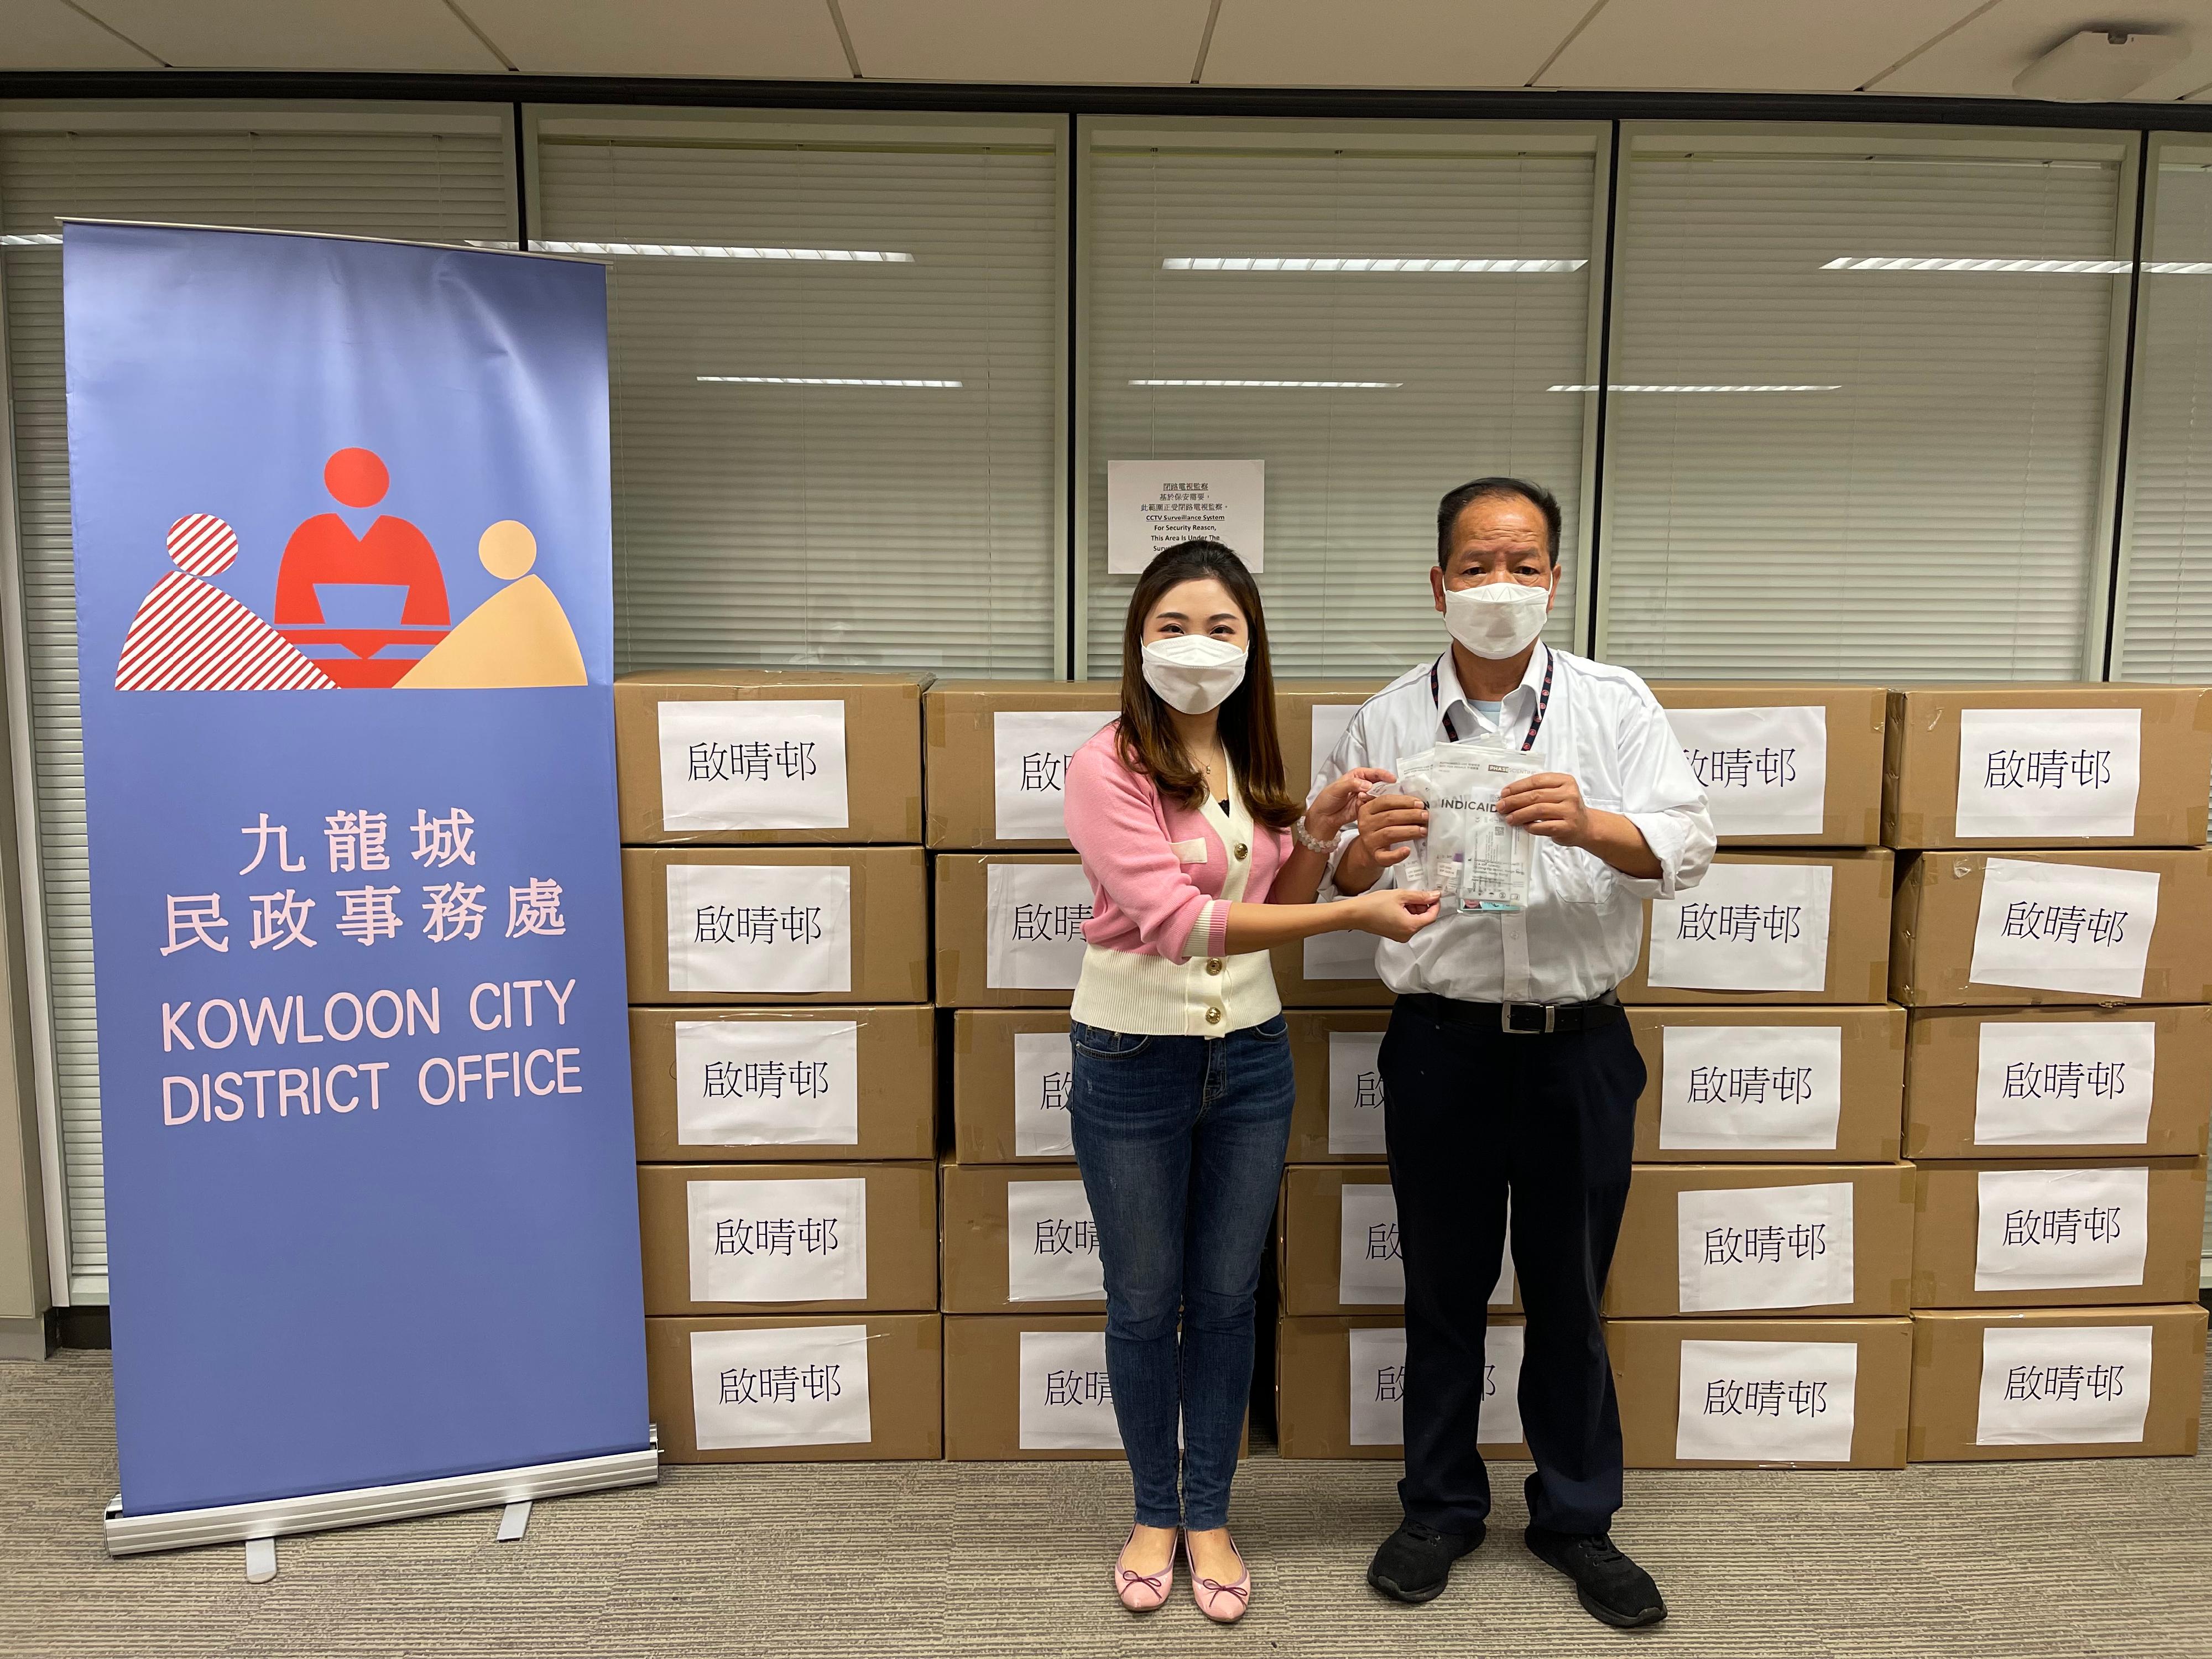 九龍城民政事務處向啟晴邨的物業管理公司派發2019冠狀病毒病快速測試套裝，供其住戶、清潔及物管員工作自願檢測。